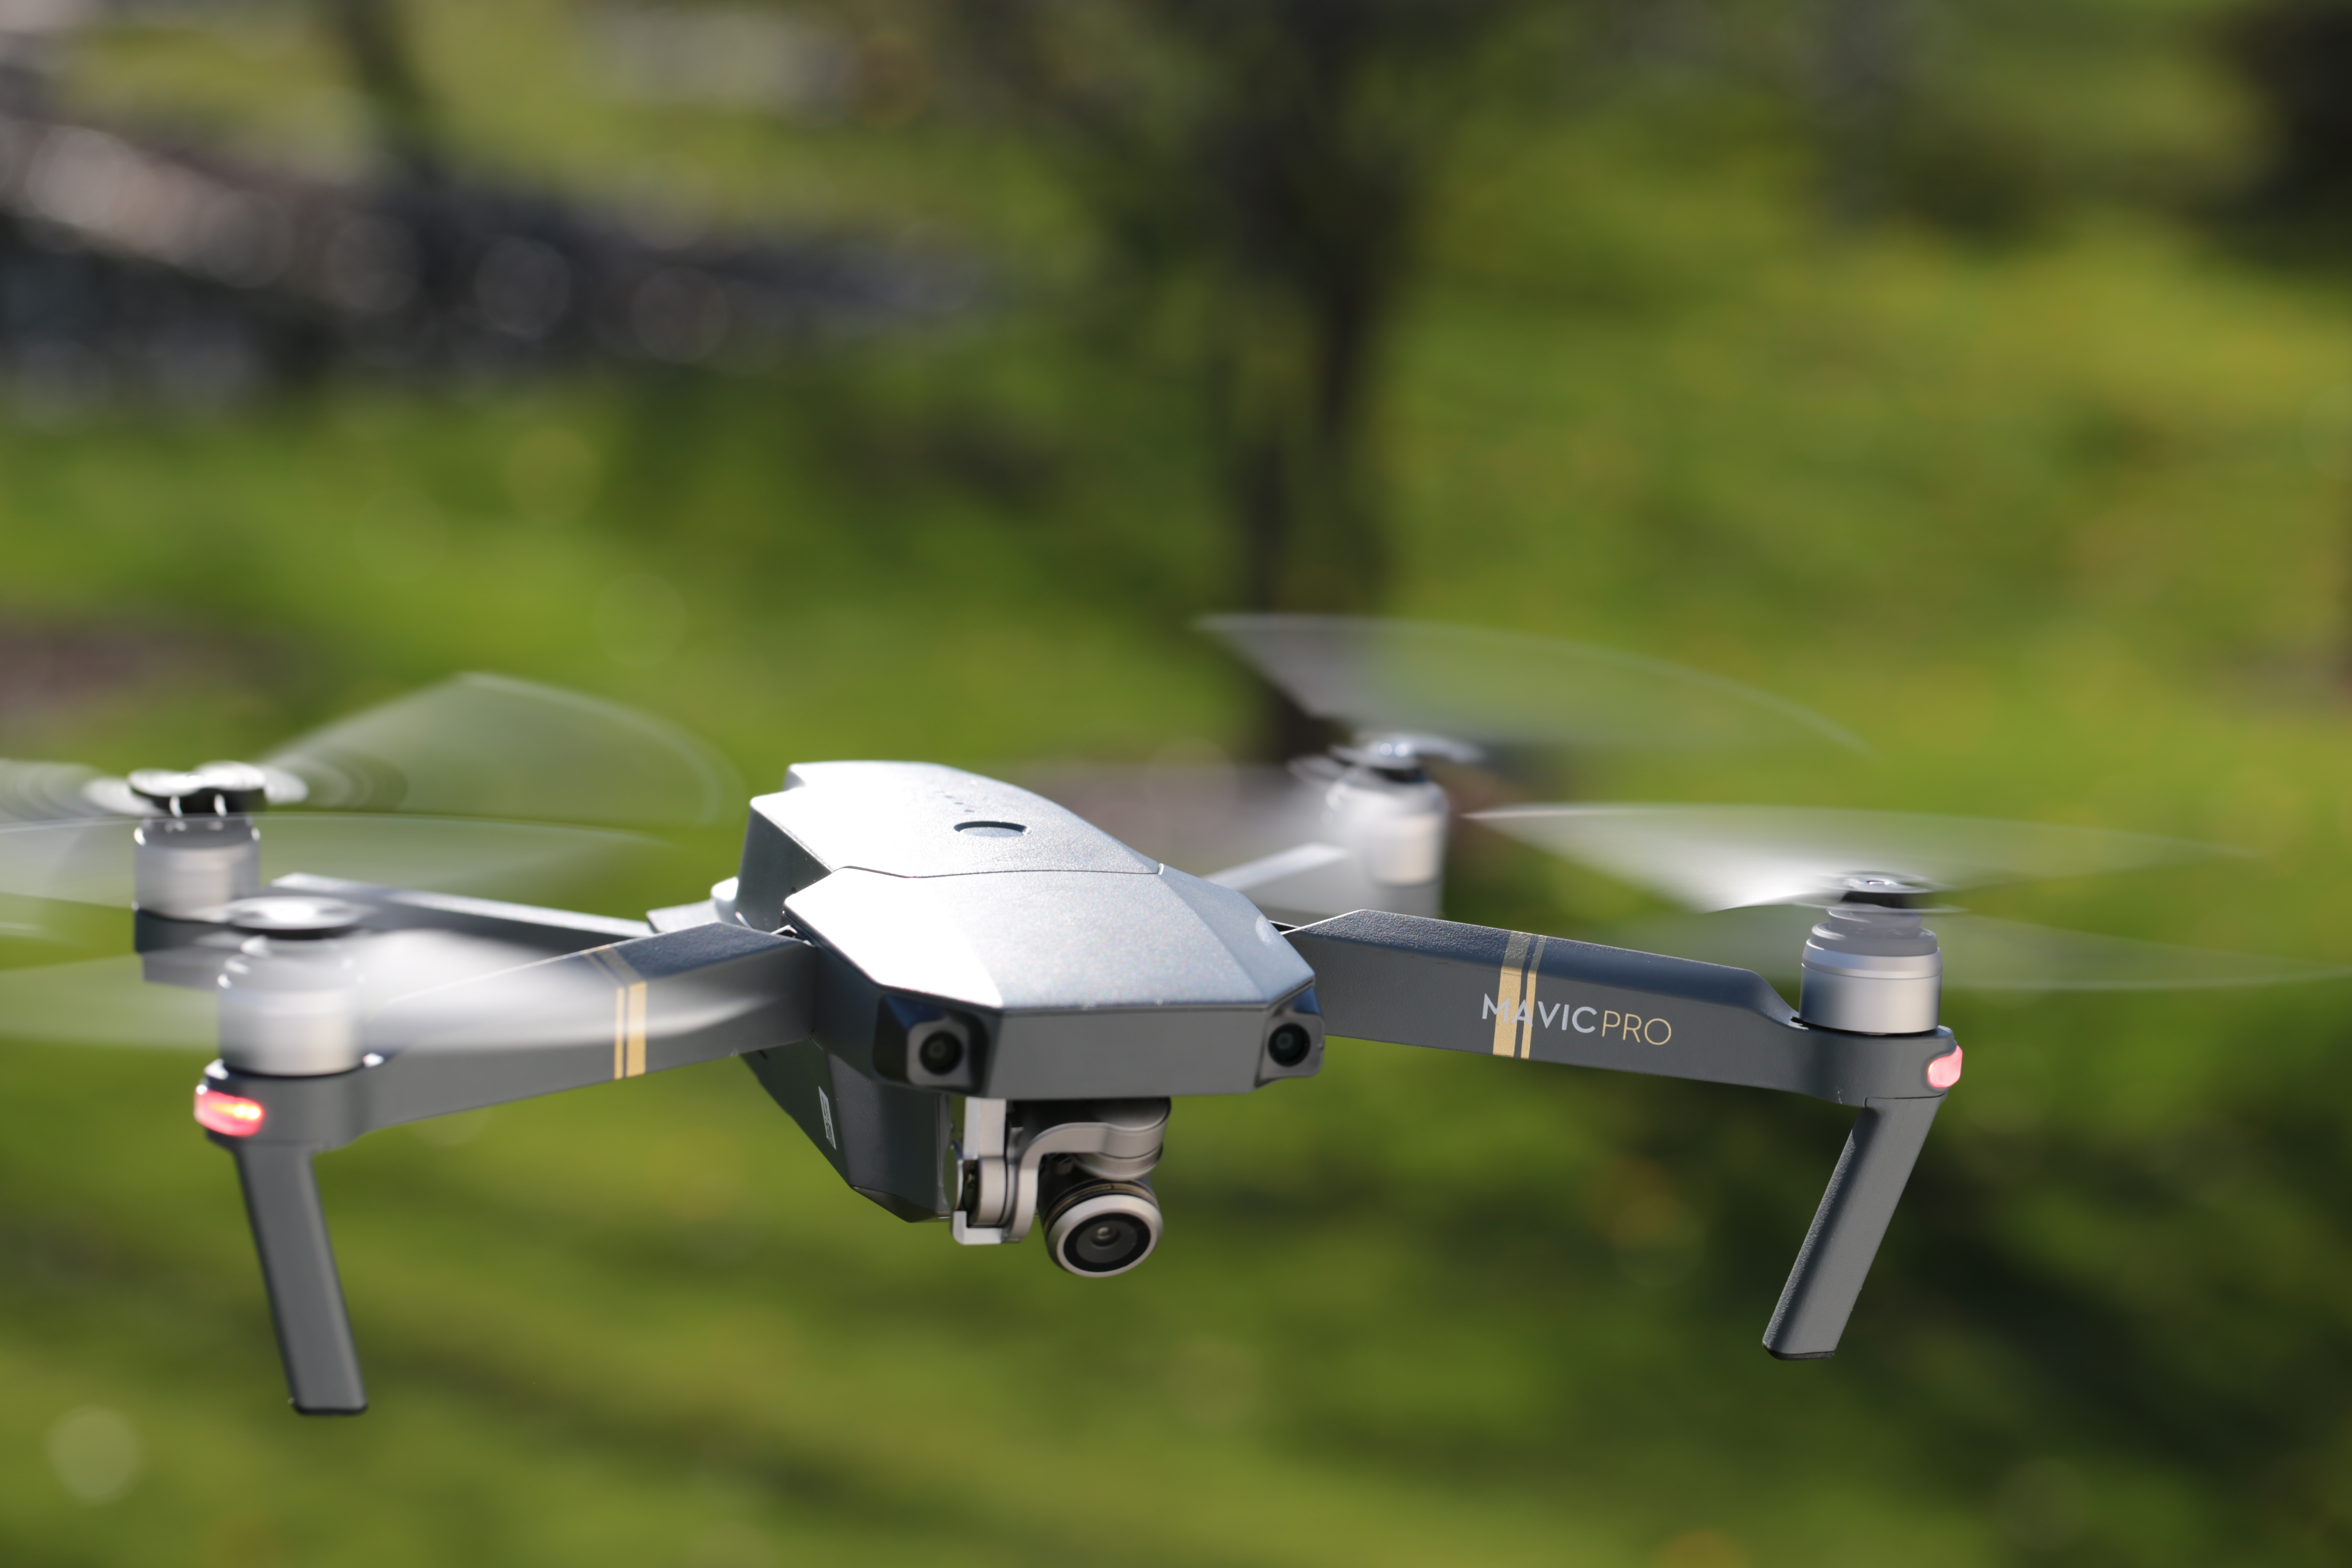 Overweldigen verzoek vervoer DJI looks to assemble drones in California as government concerns mount |  TechCrunch